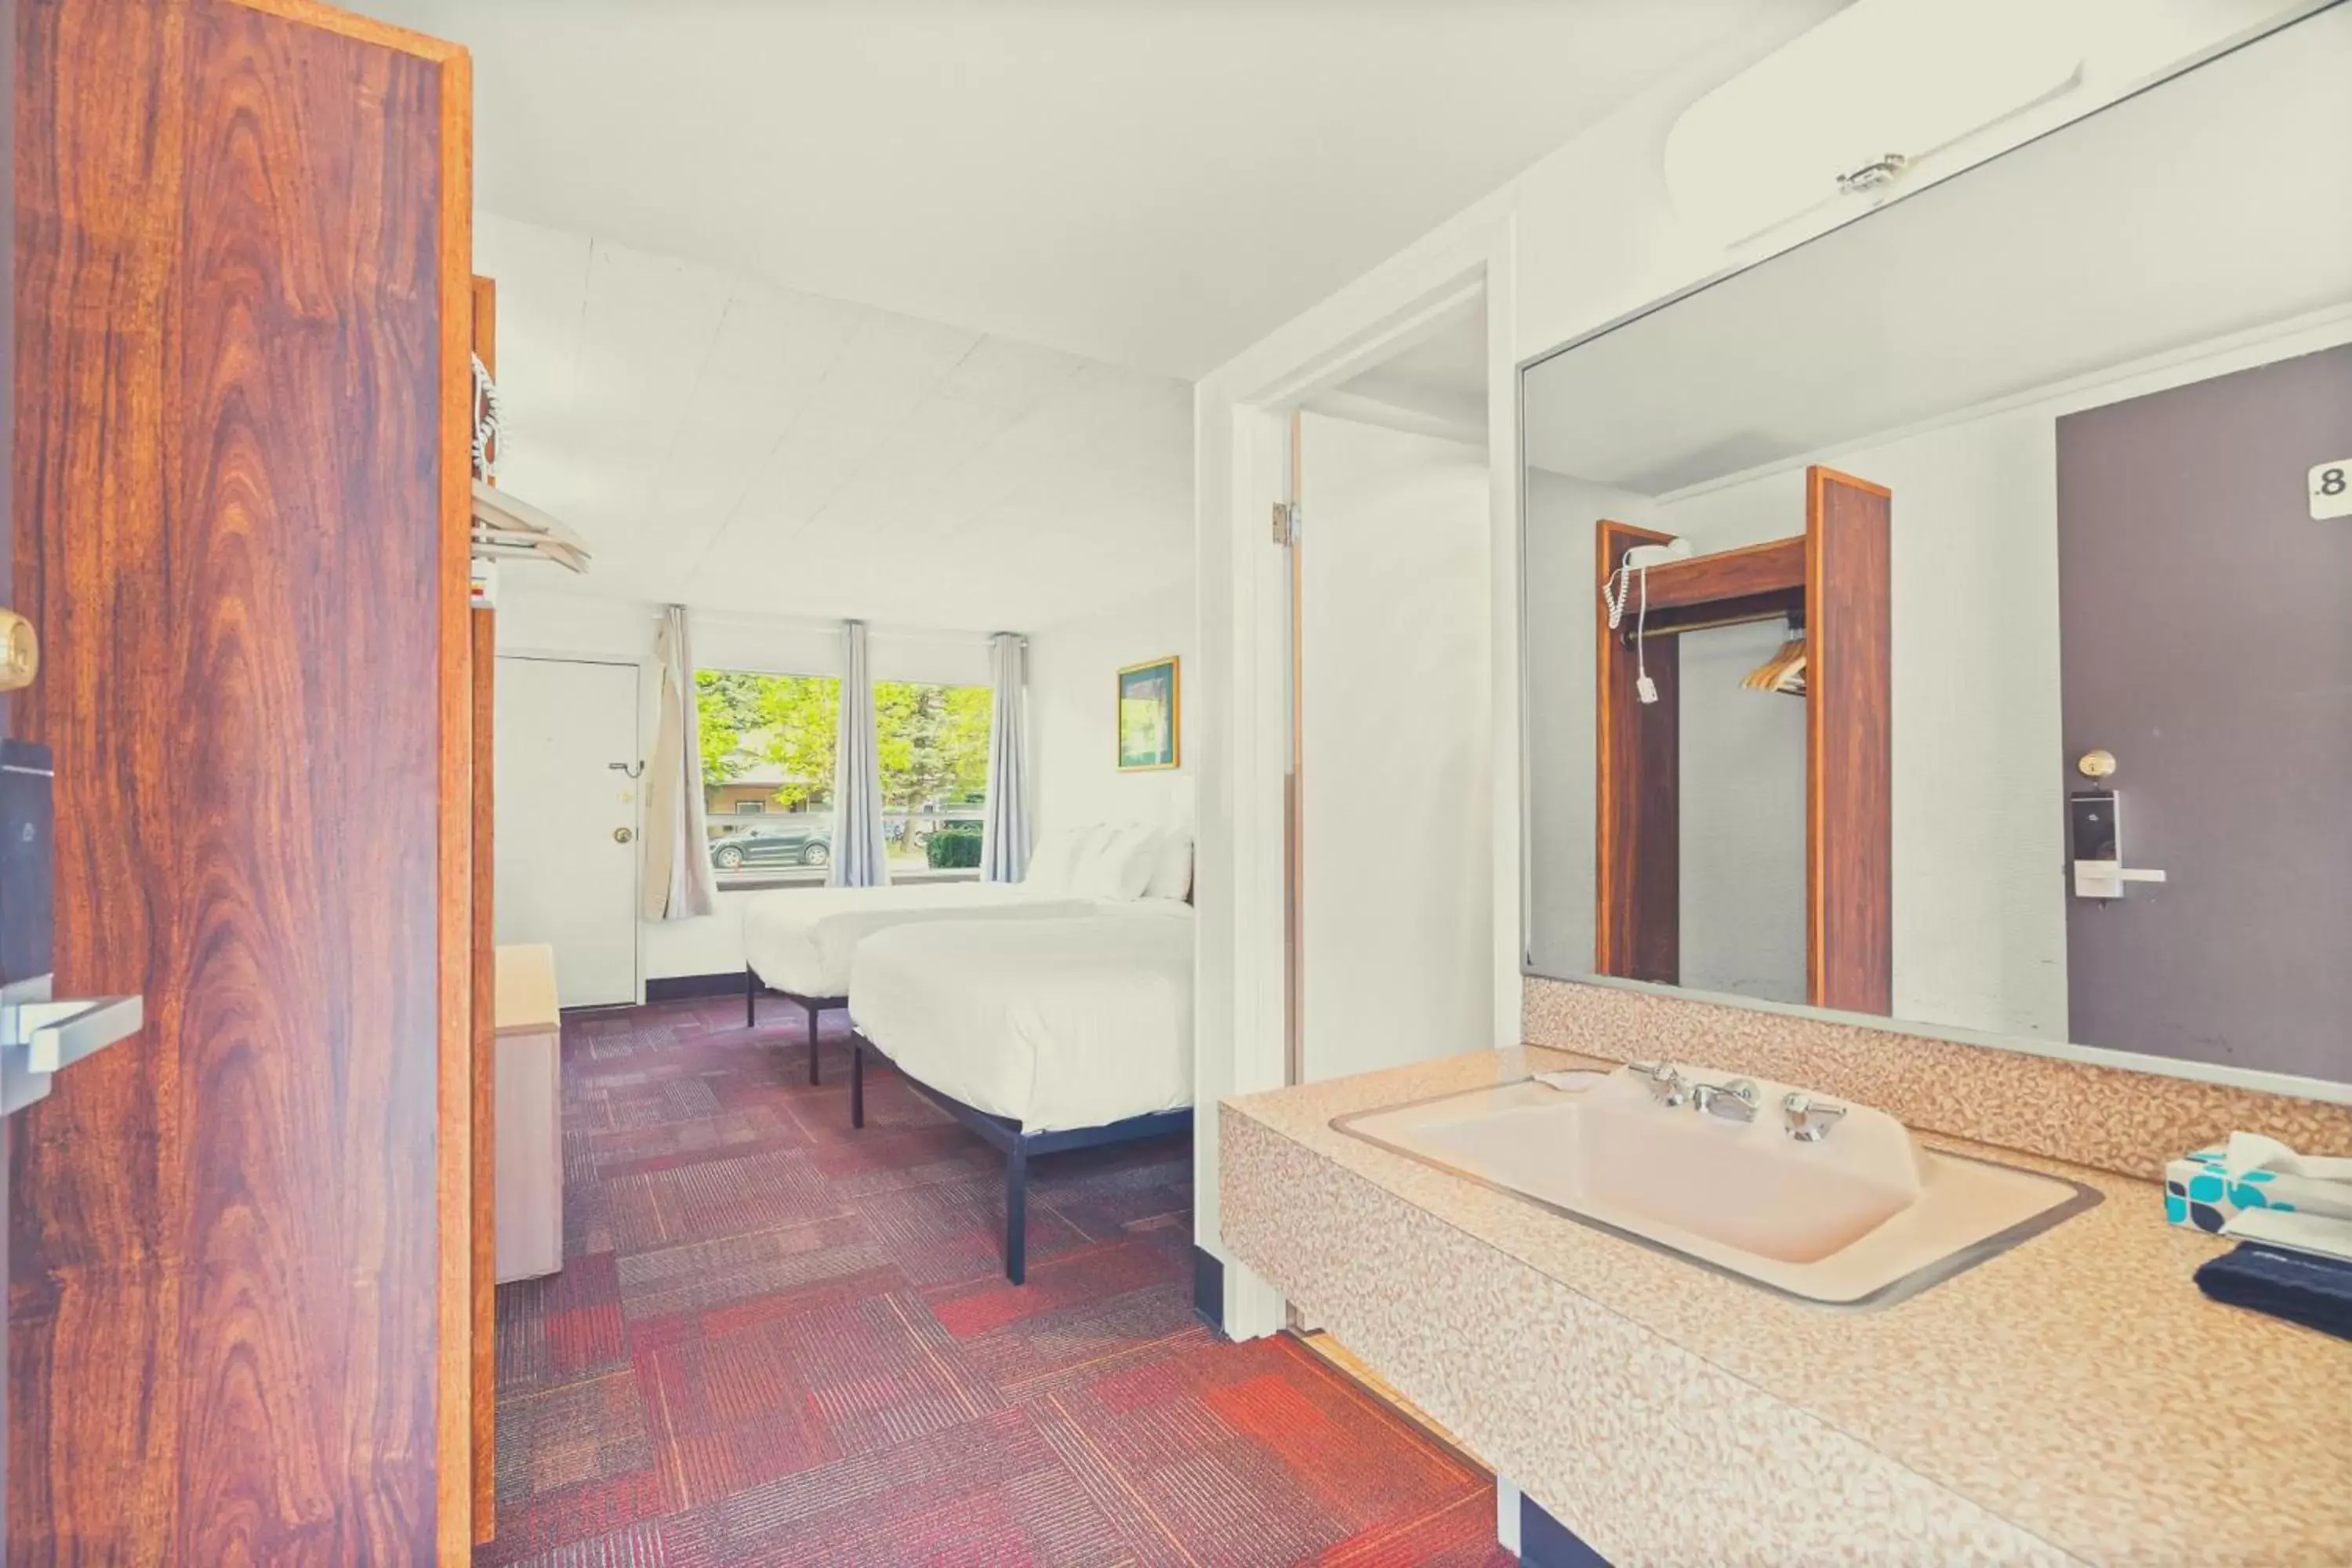 Bedroom, Bathroom in Stardust Motel Wallace